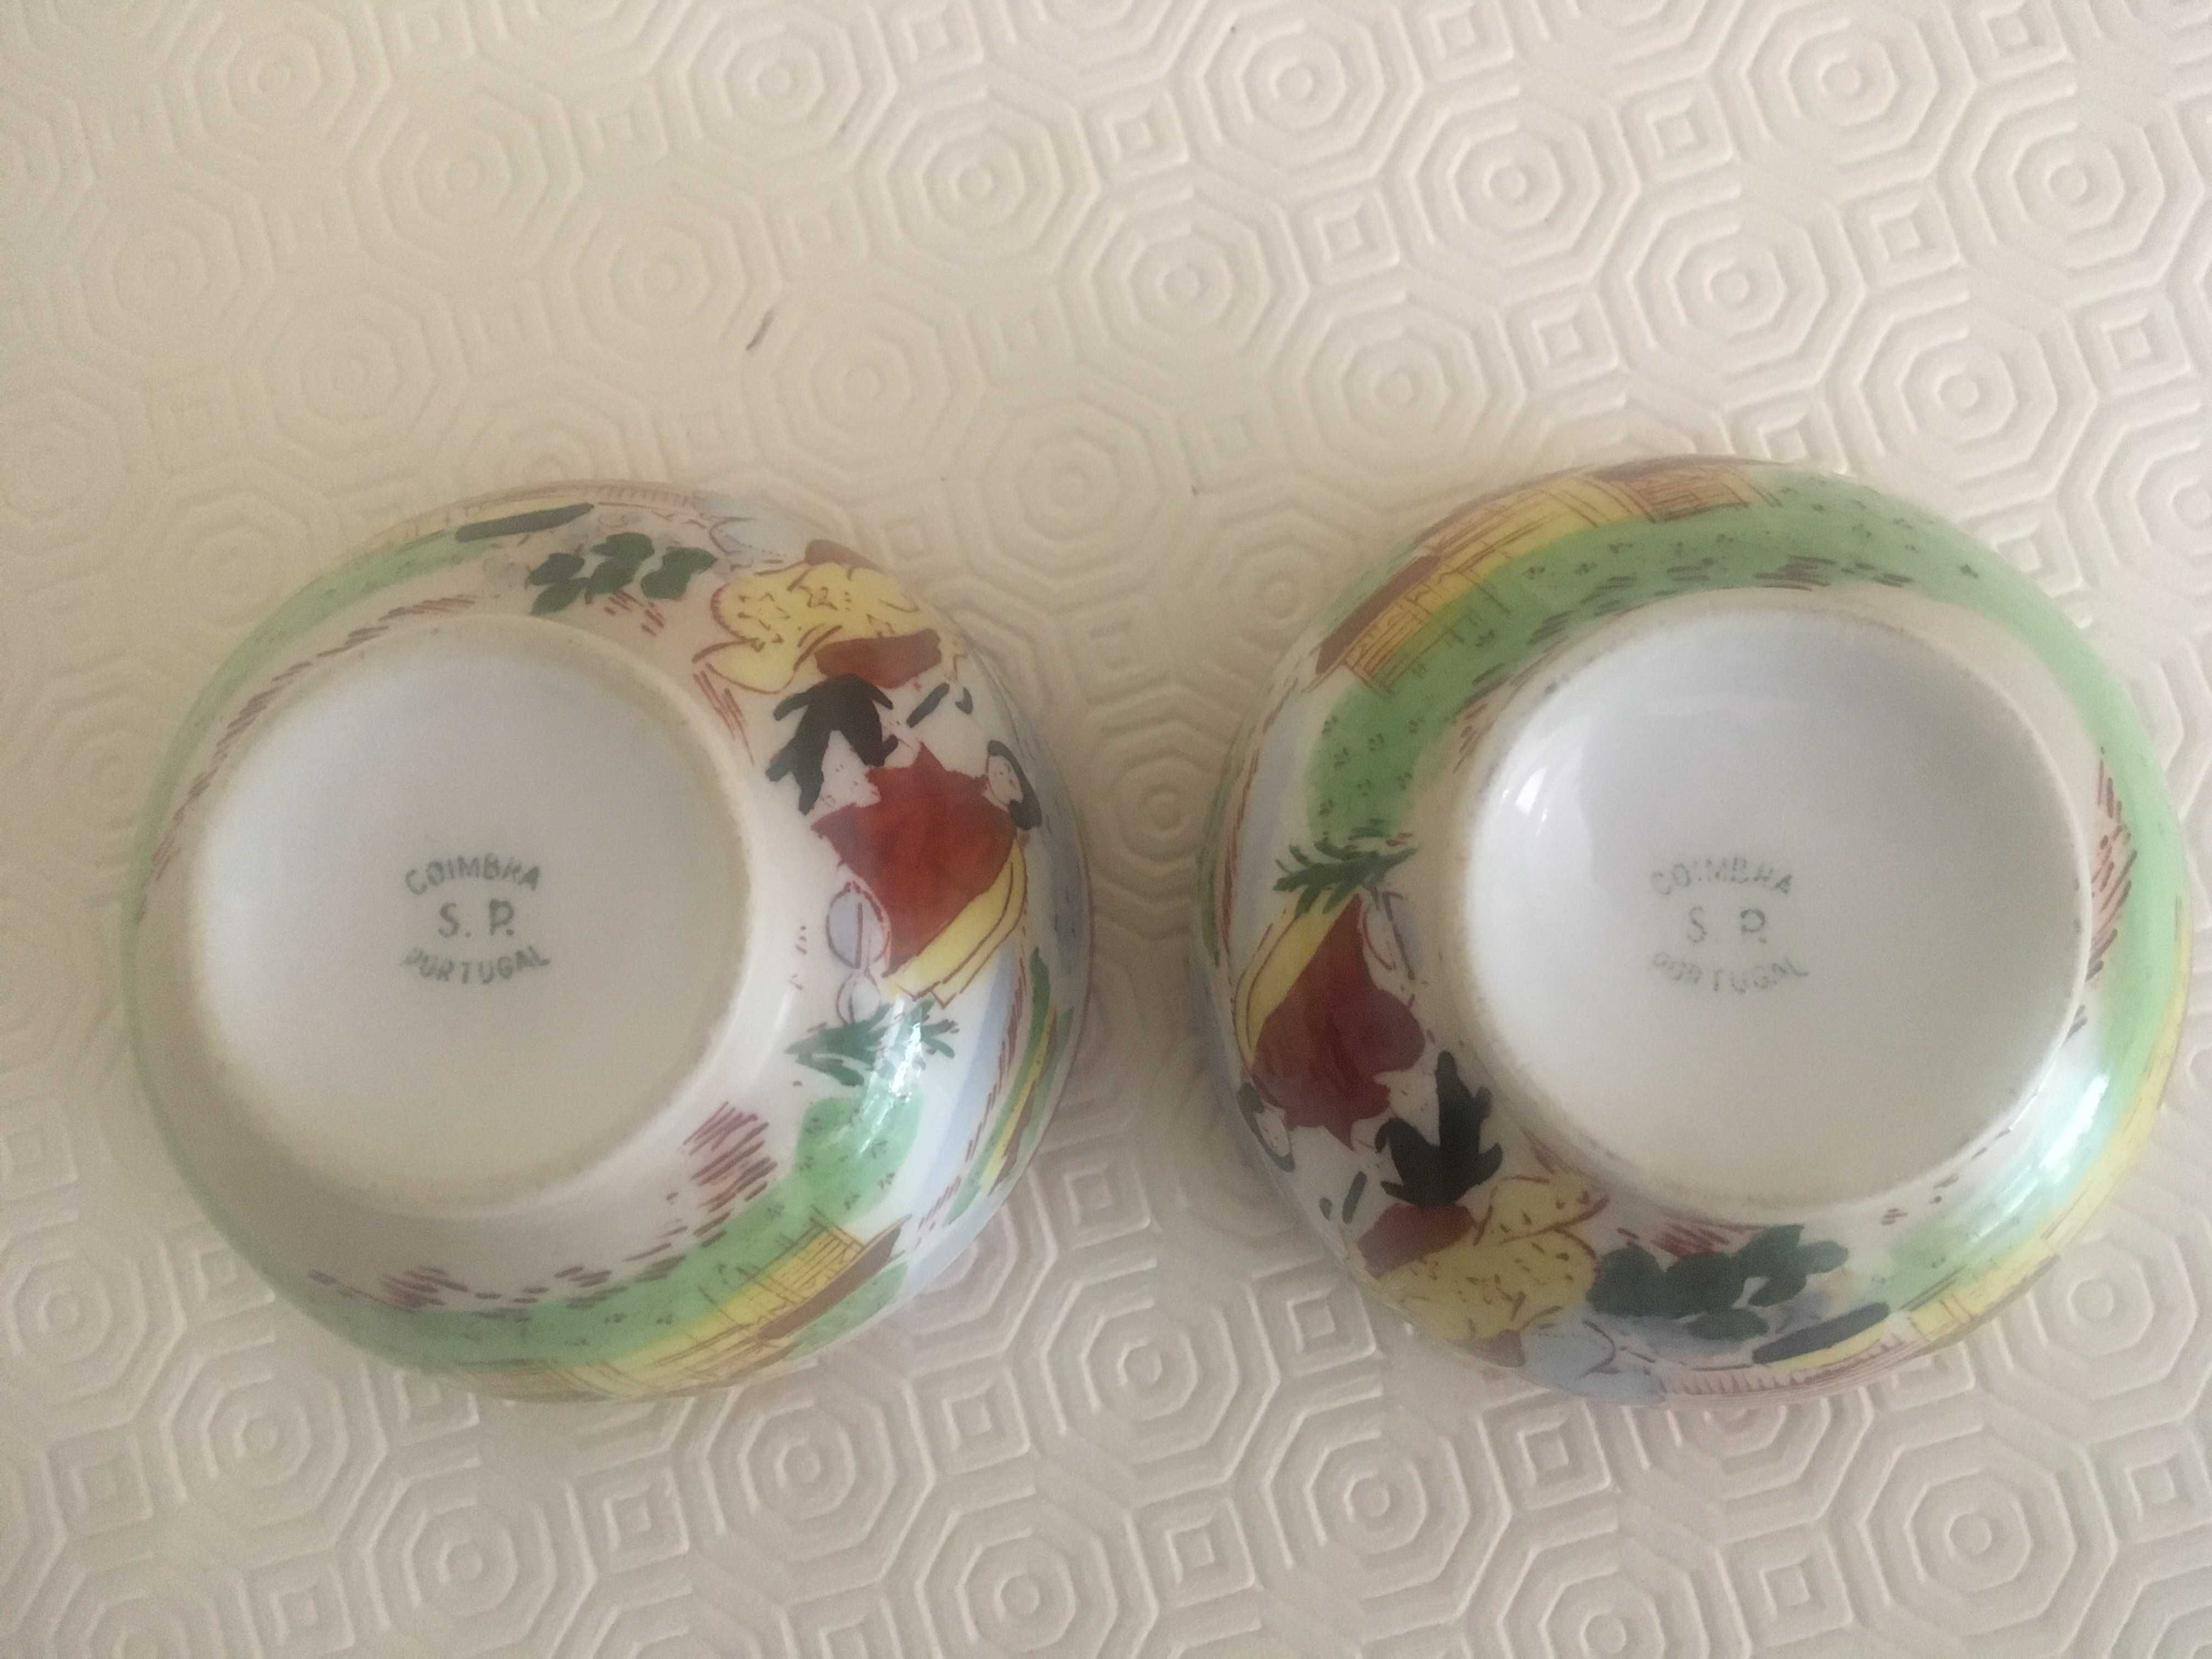 Taças antigas de porcelana, com motivos chineses